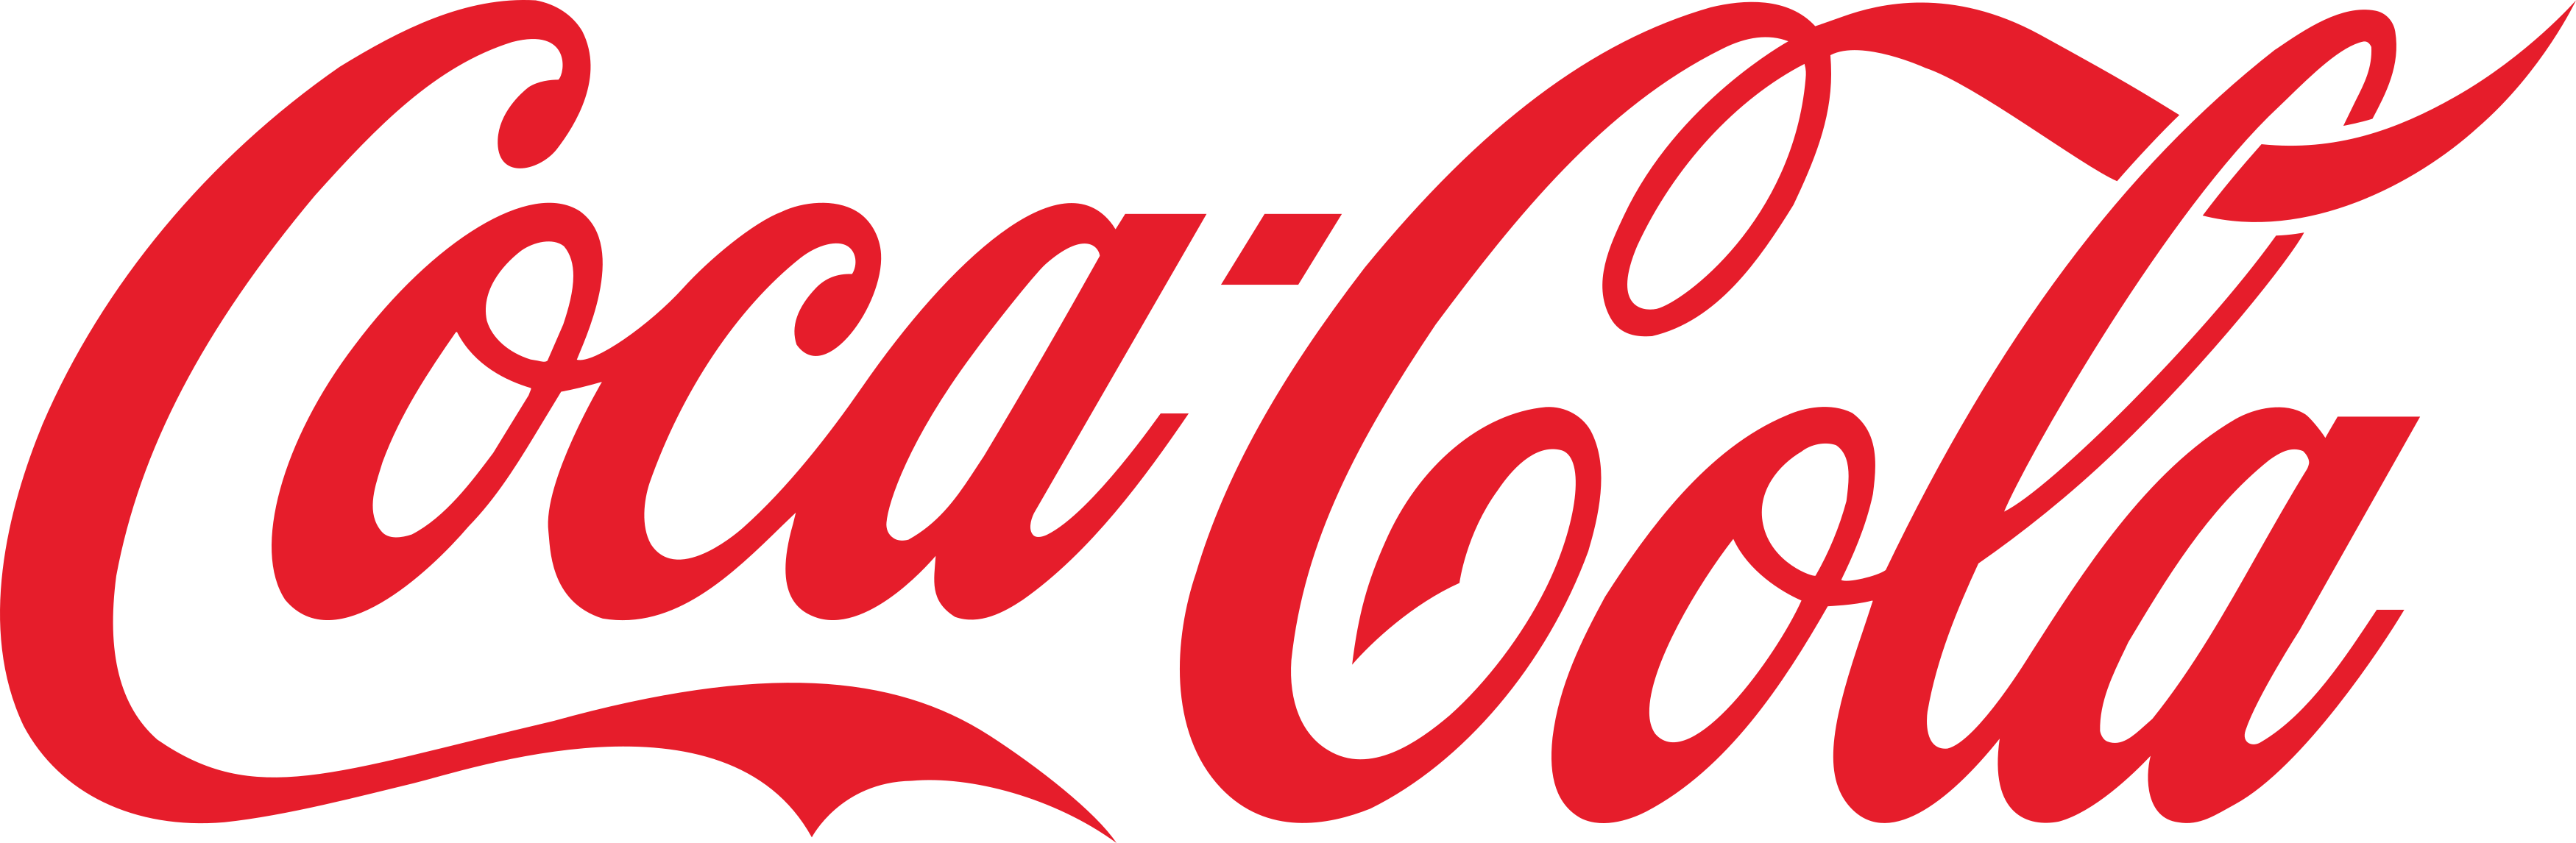 coca cola logo 1 - Coca-Cola Logo